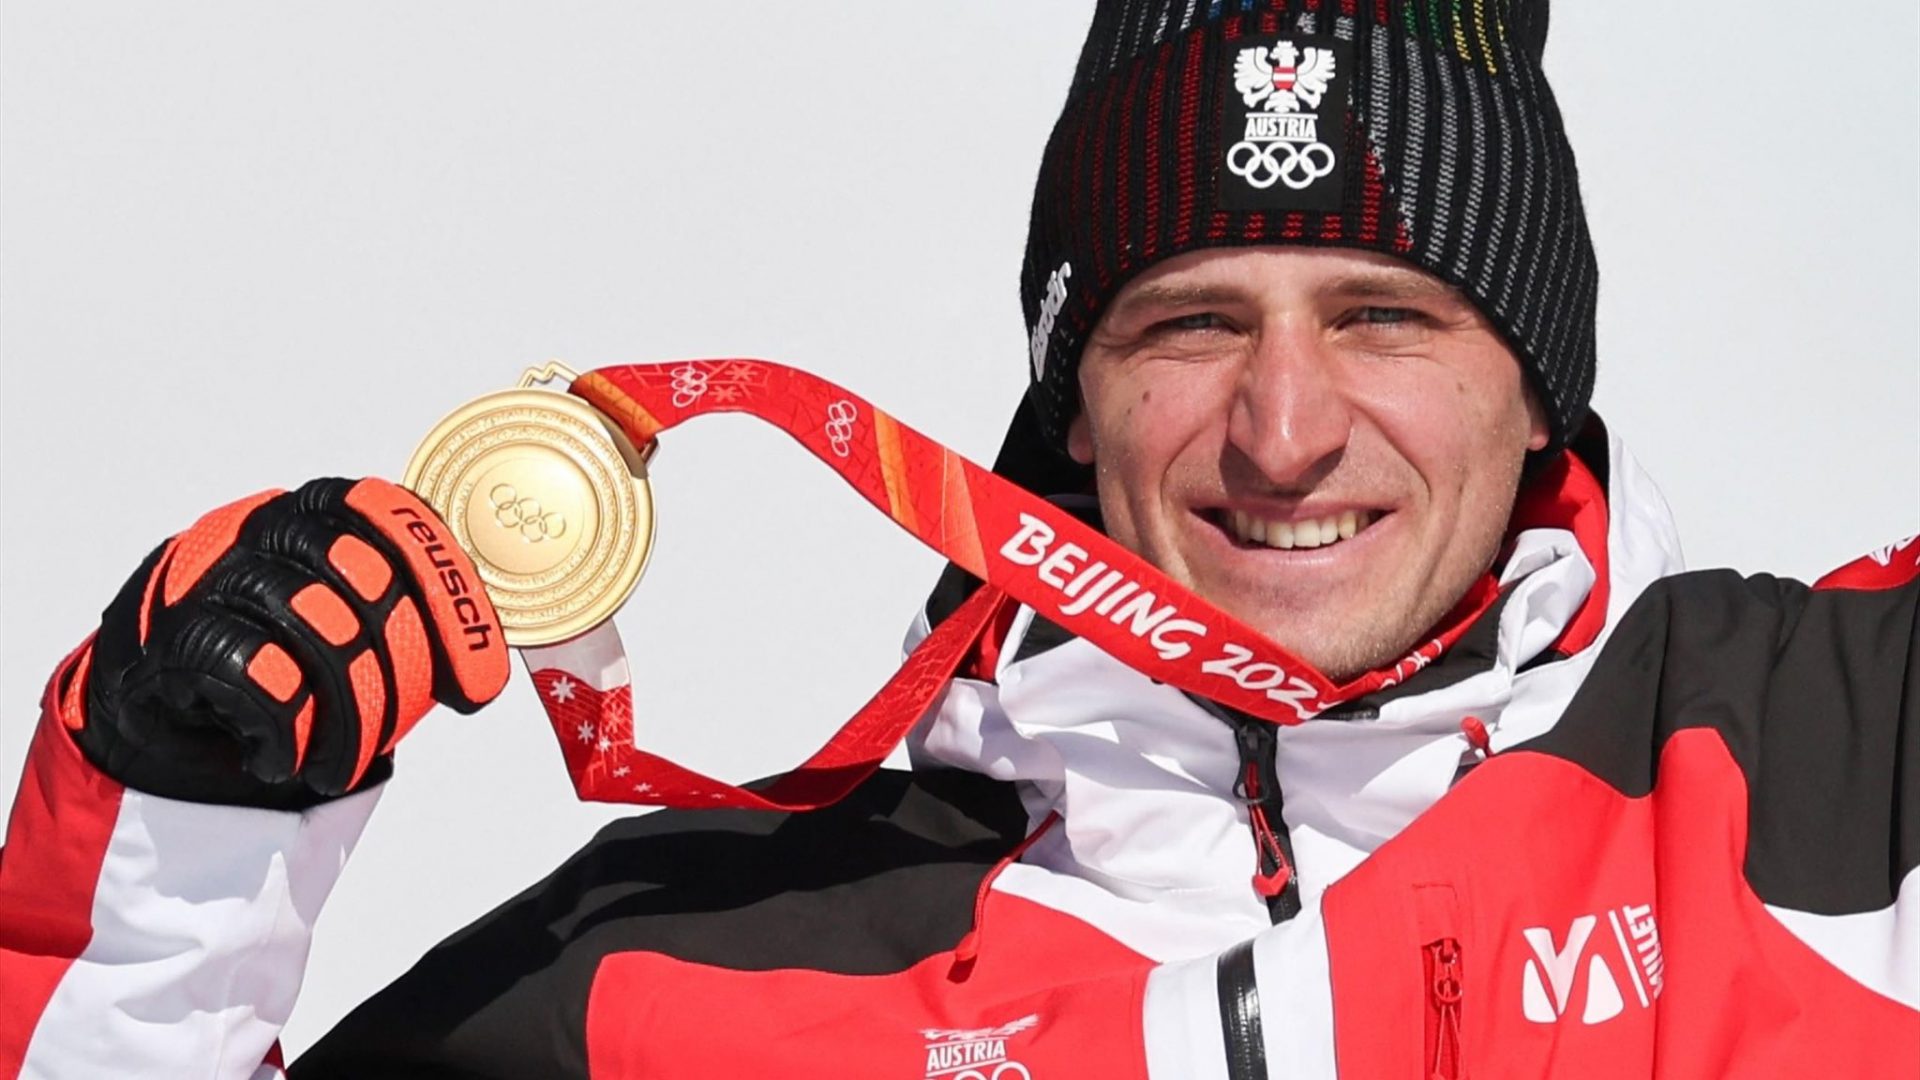 001-Matthias-Mayer-austrian-ski-athlete